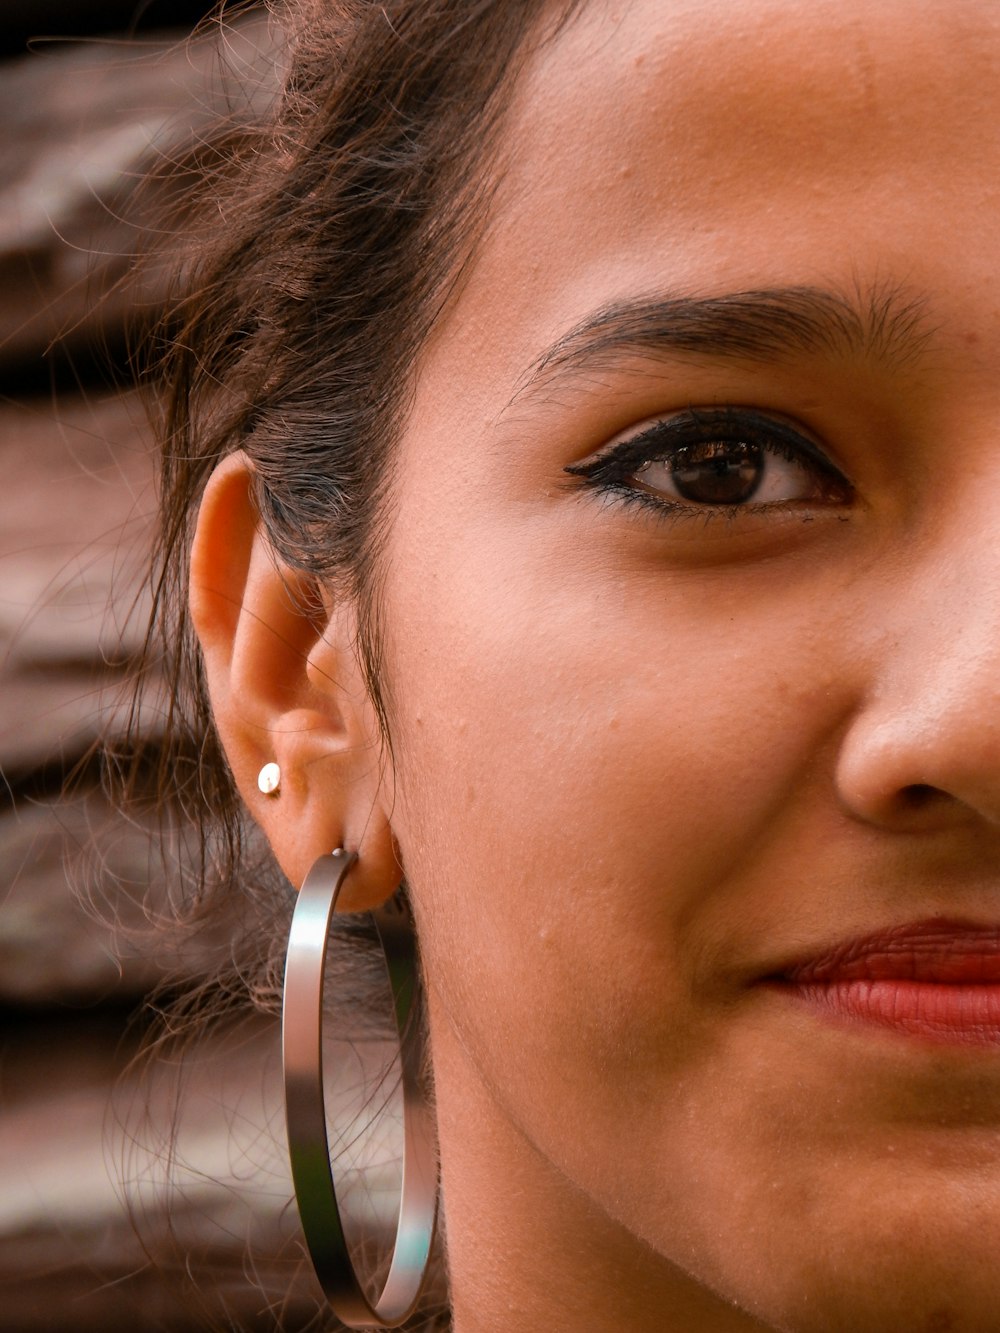 woman wears bangle earring